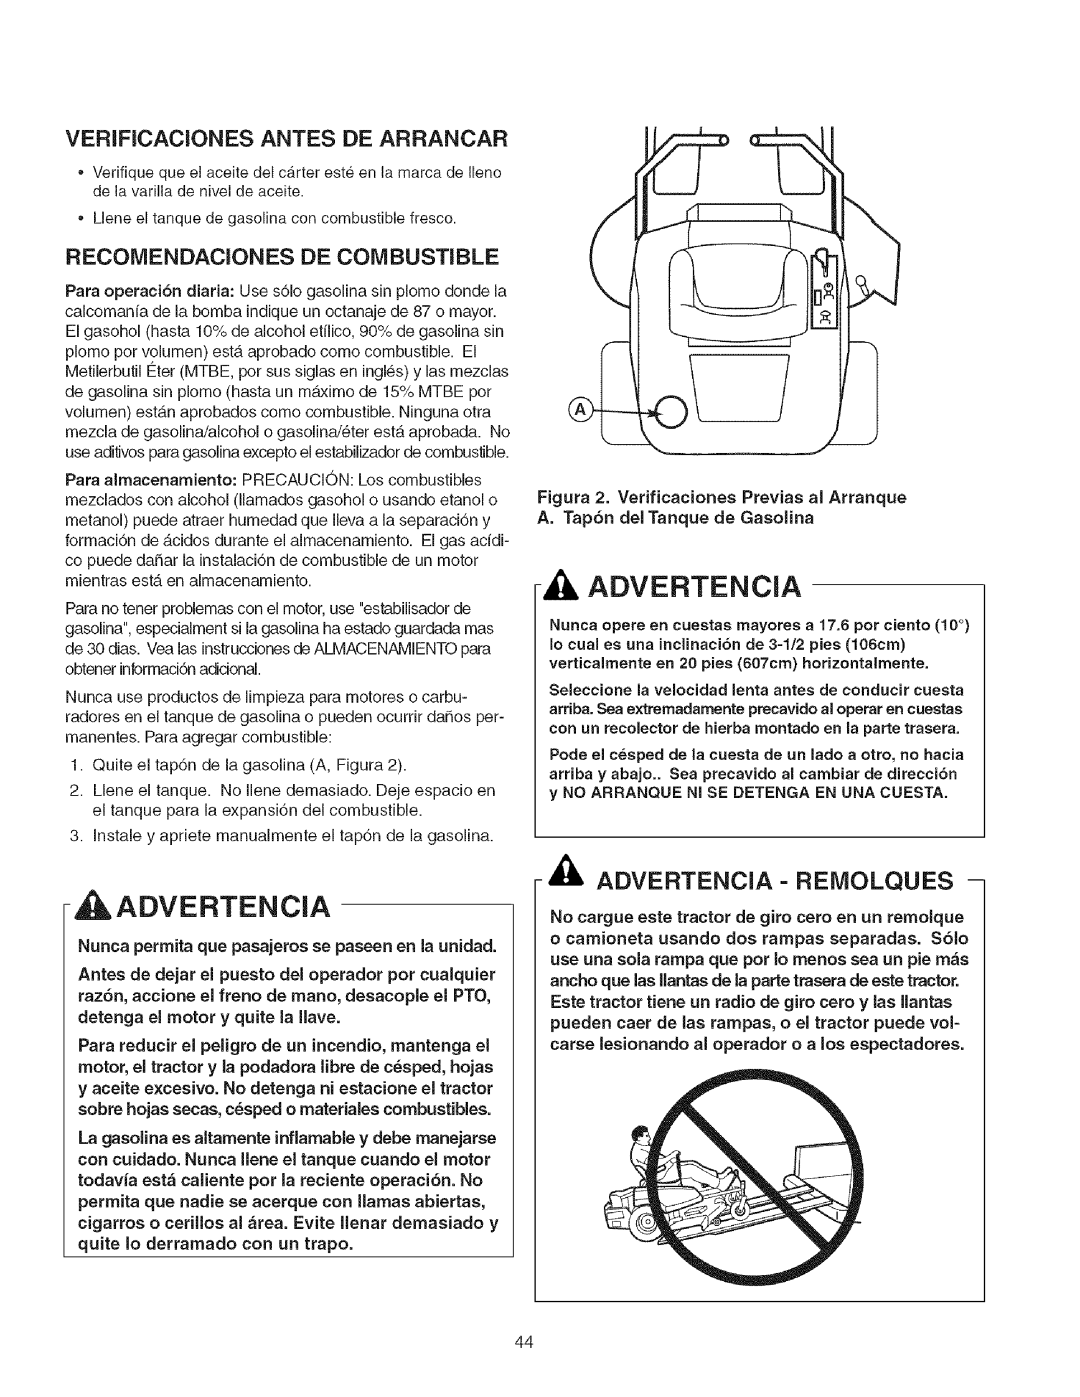 Craftsman 107.27768 manual Advertencia - Reiviolques, Verificaciones Antes De Arrancar, Recomendaciones De Combustible 